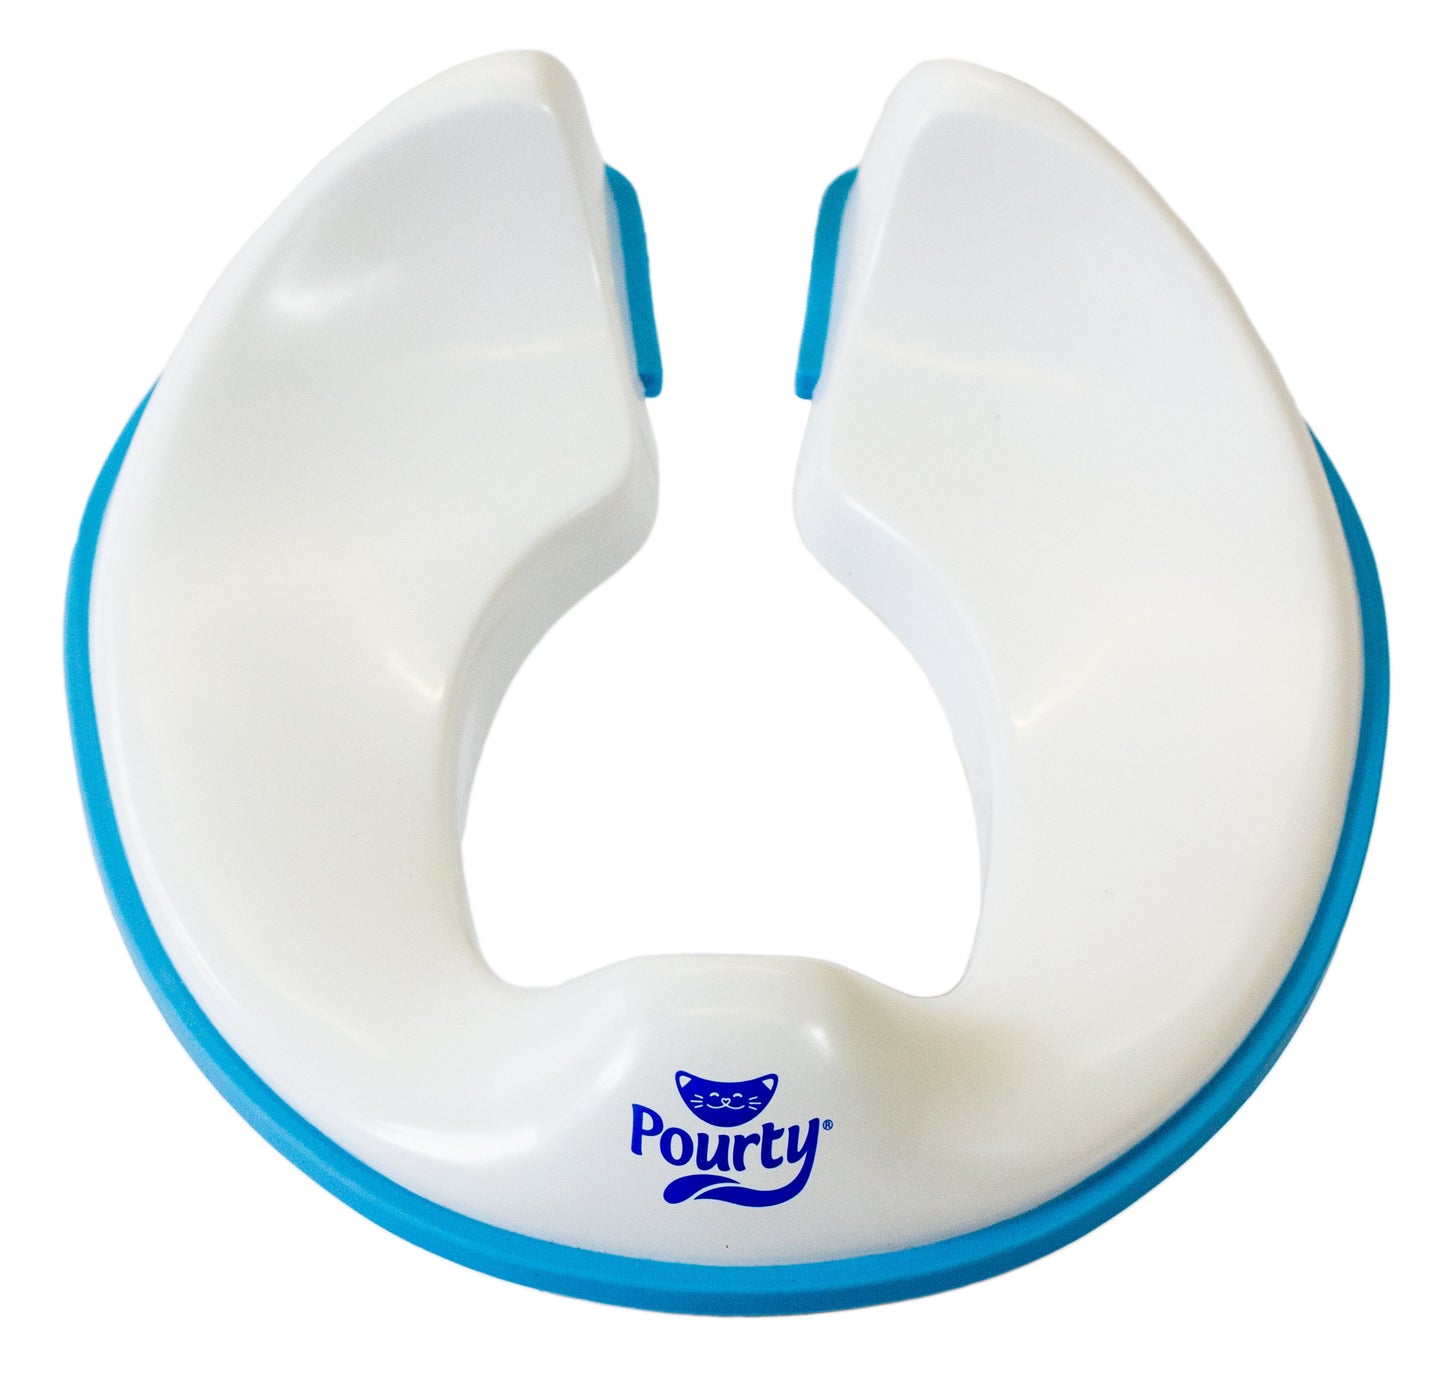 Pourty Flexi-Fit Toilet Trainer Blue